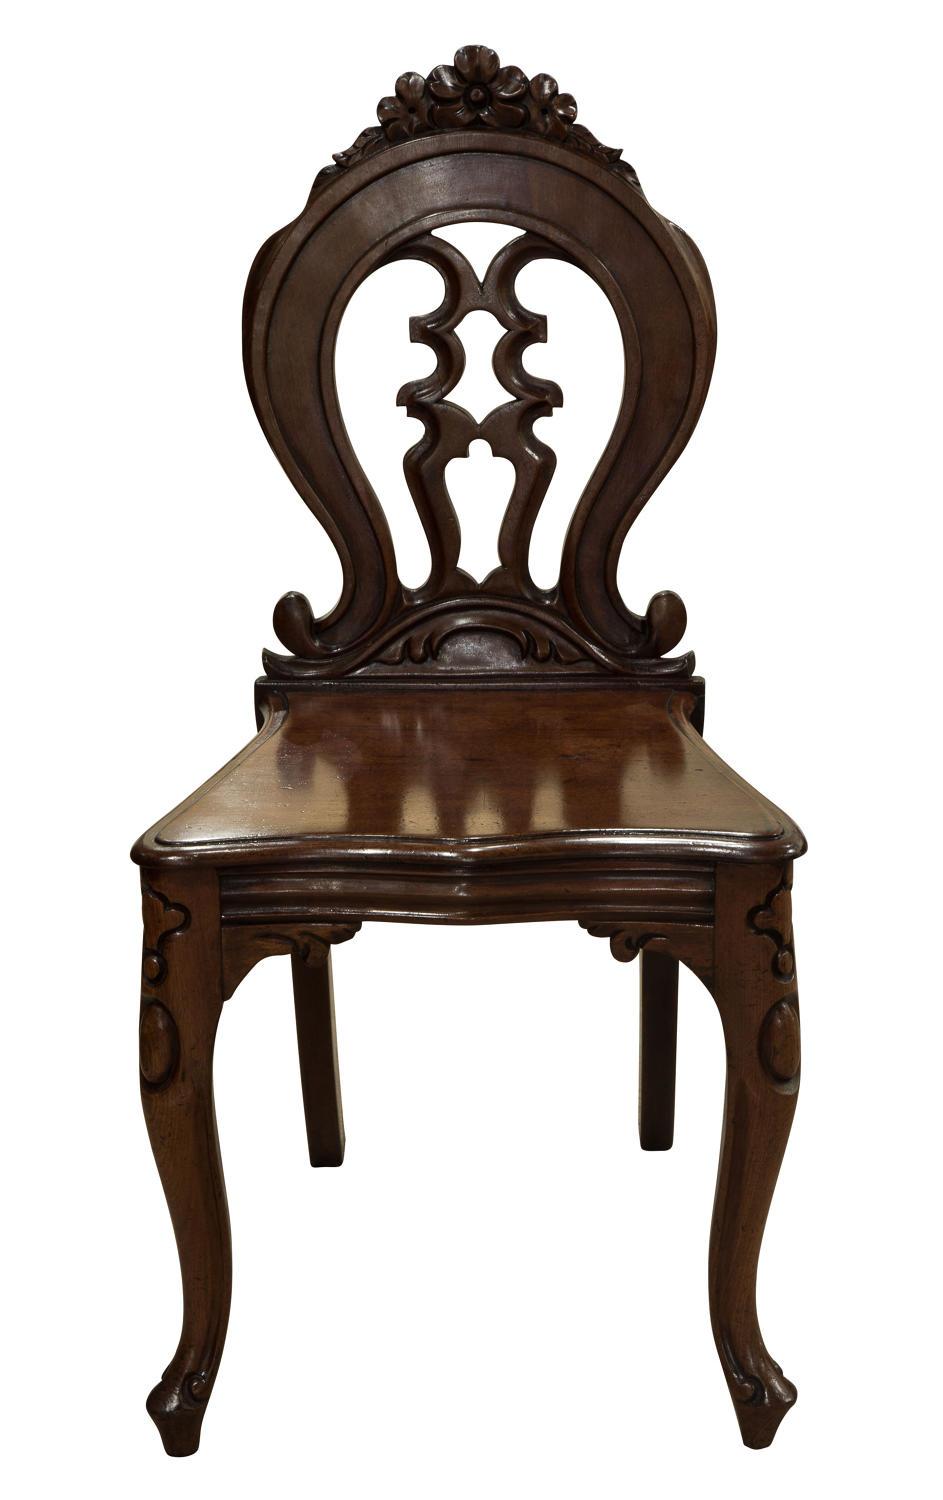 Pair of mahogany hall chairs

circa 1860.